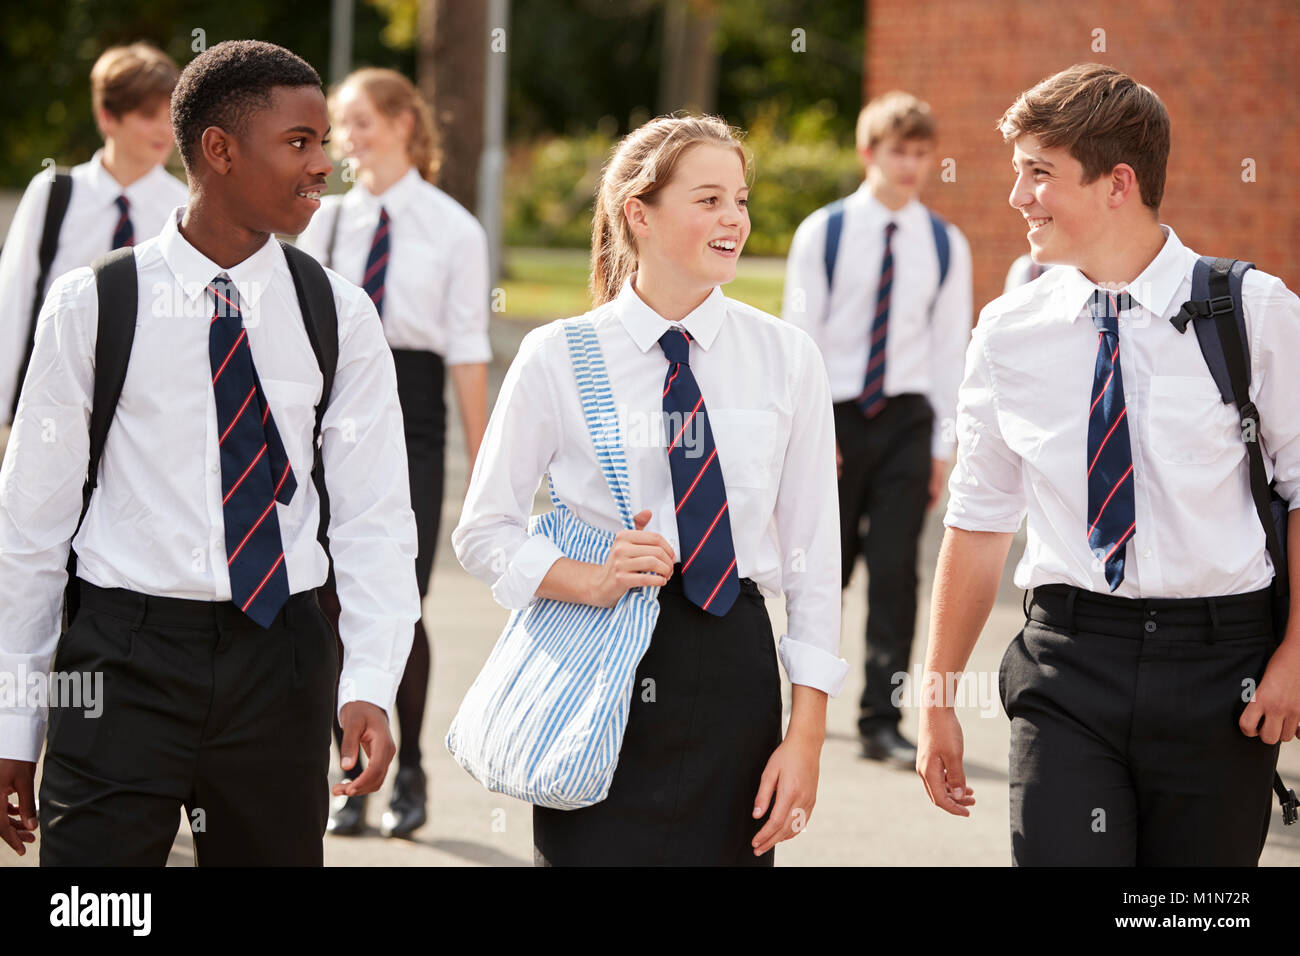 Groupe d'étudiants adolescents en uniforme à l'extérieur de bâtiments scolaires Banque D'Images